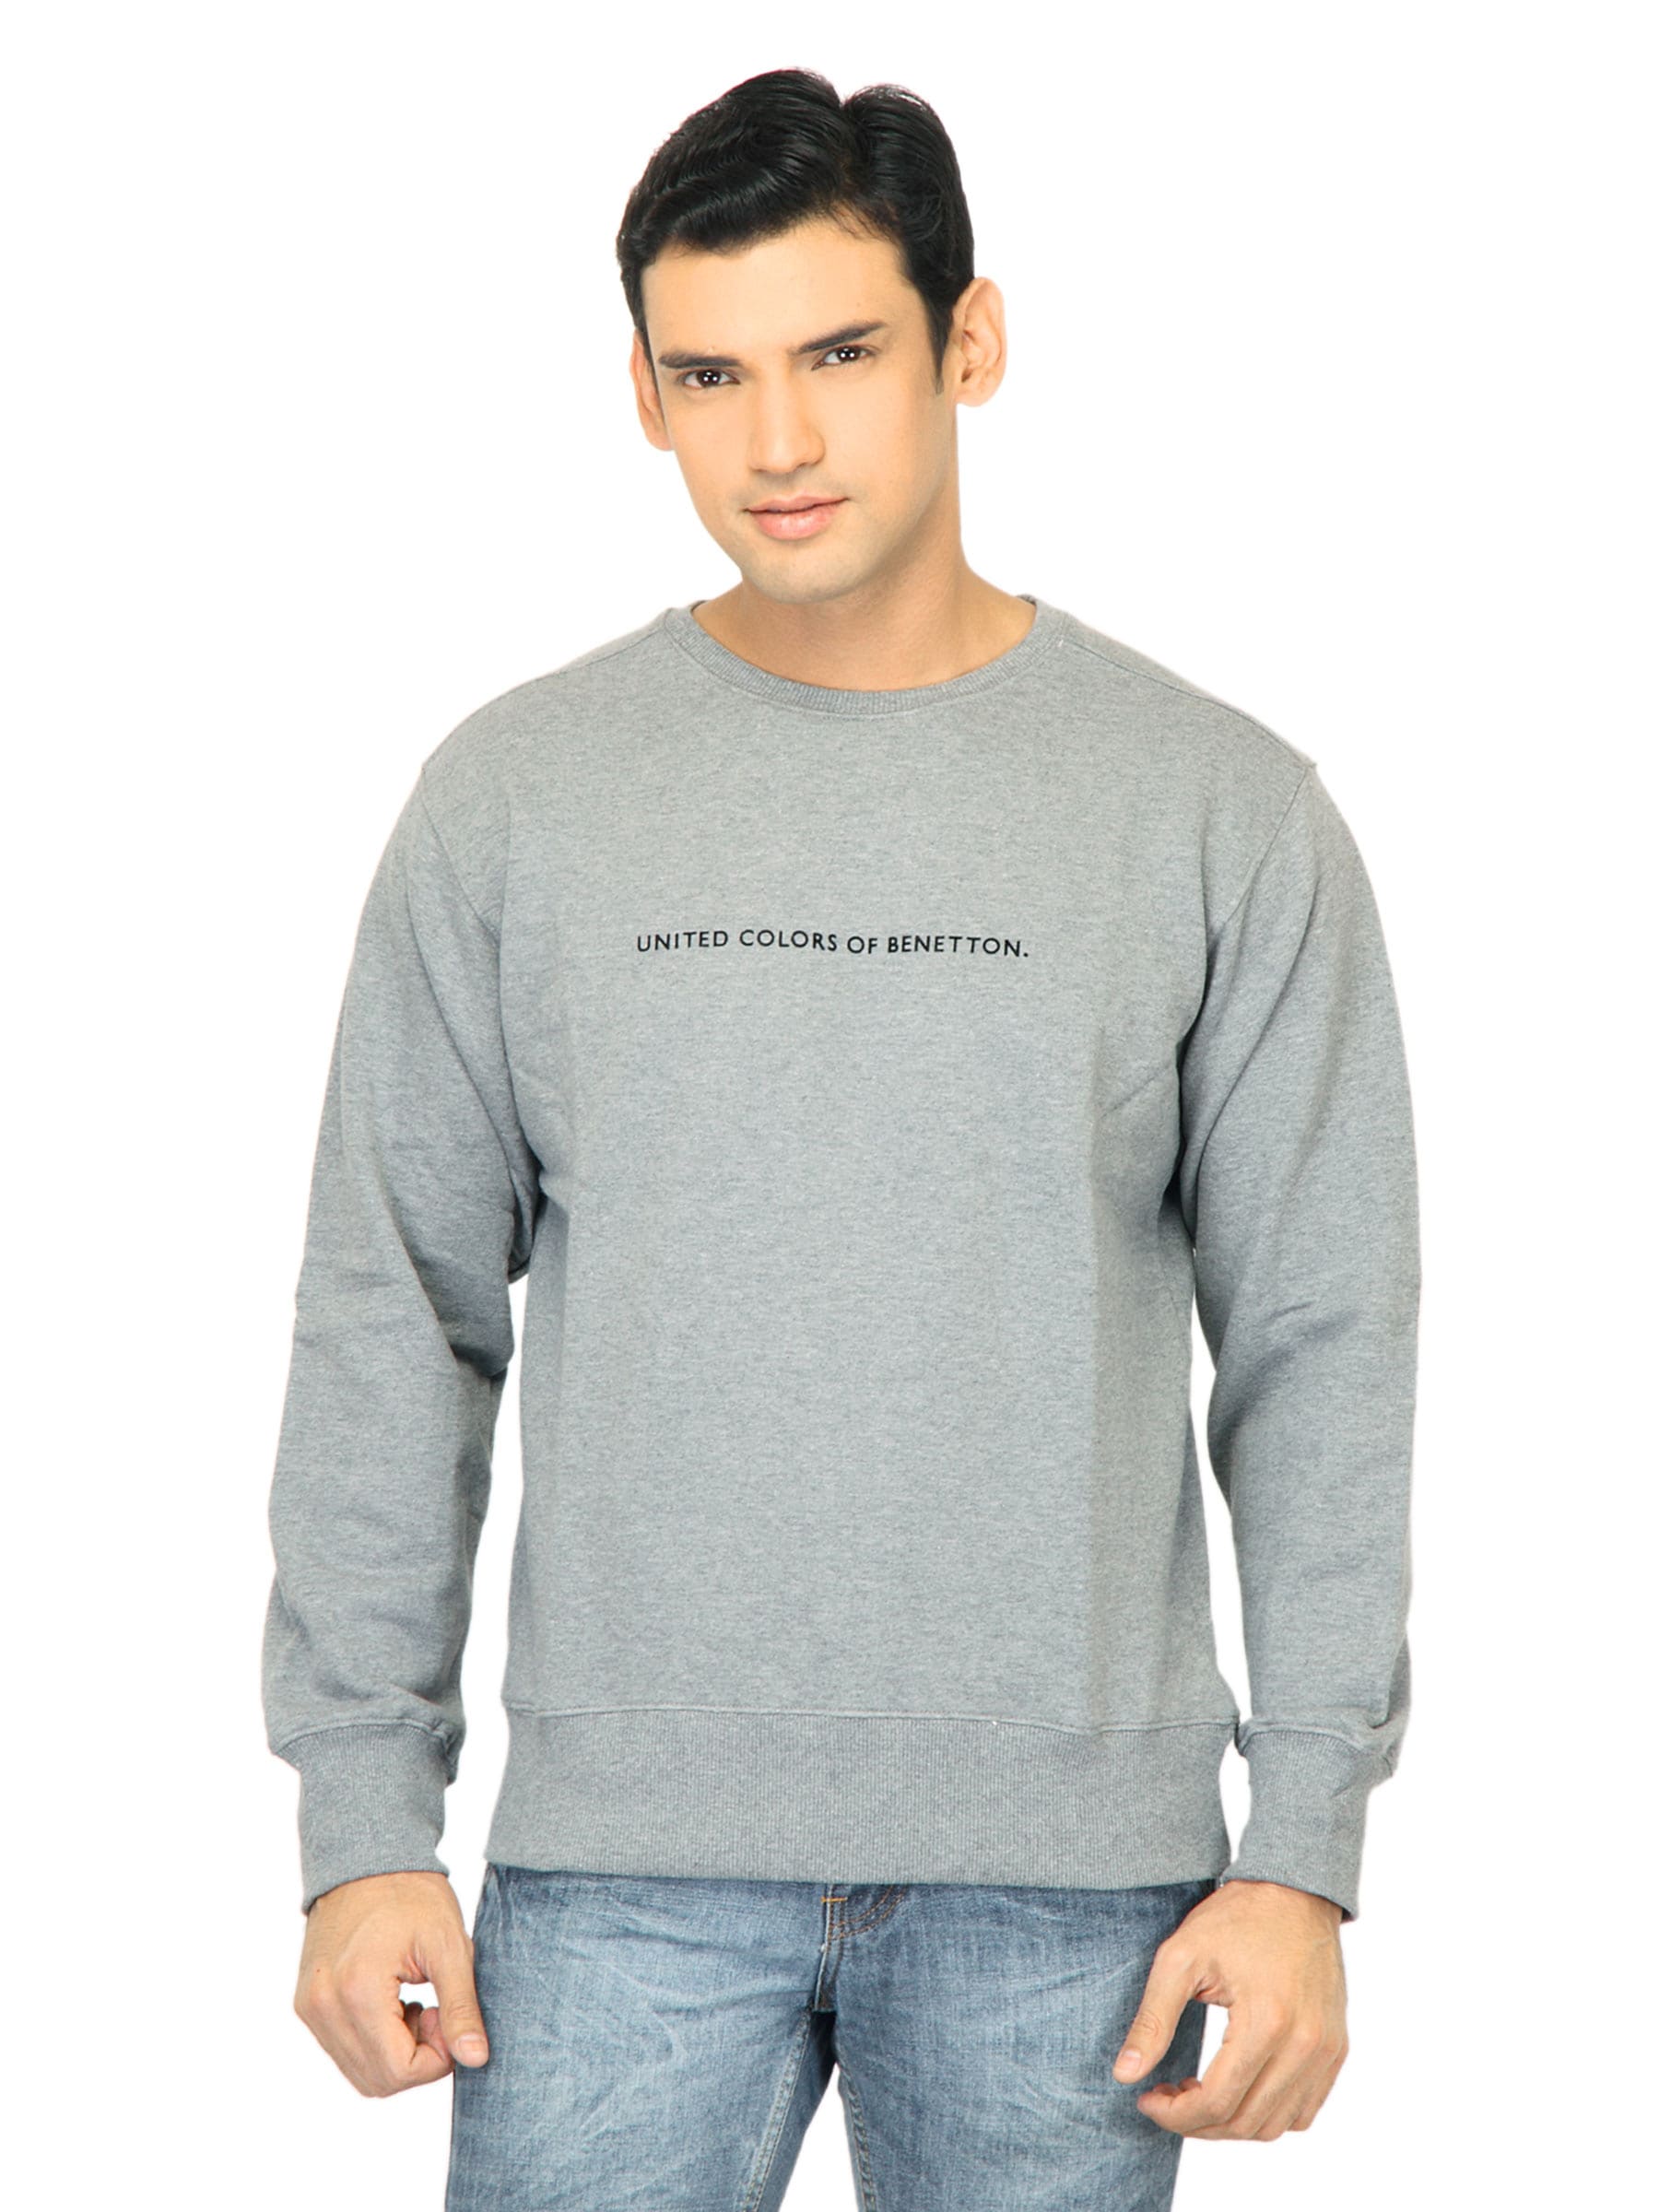 United Colors of Benetton Men Solid Grey Sweatshirt